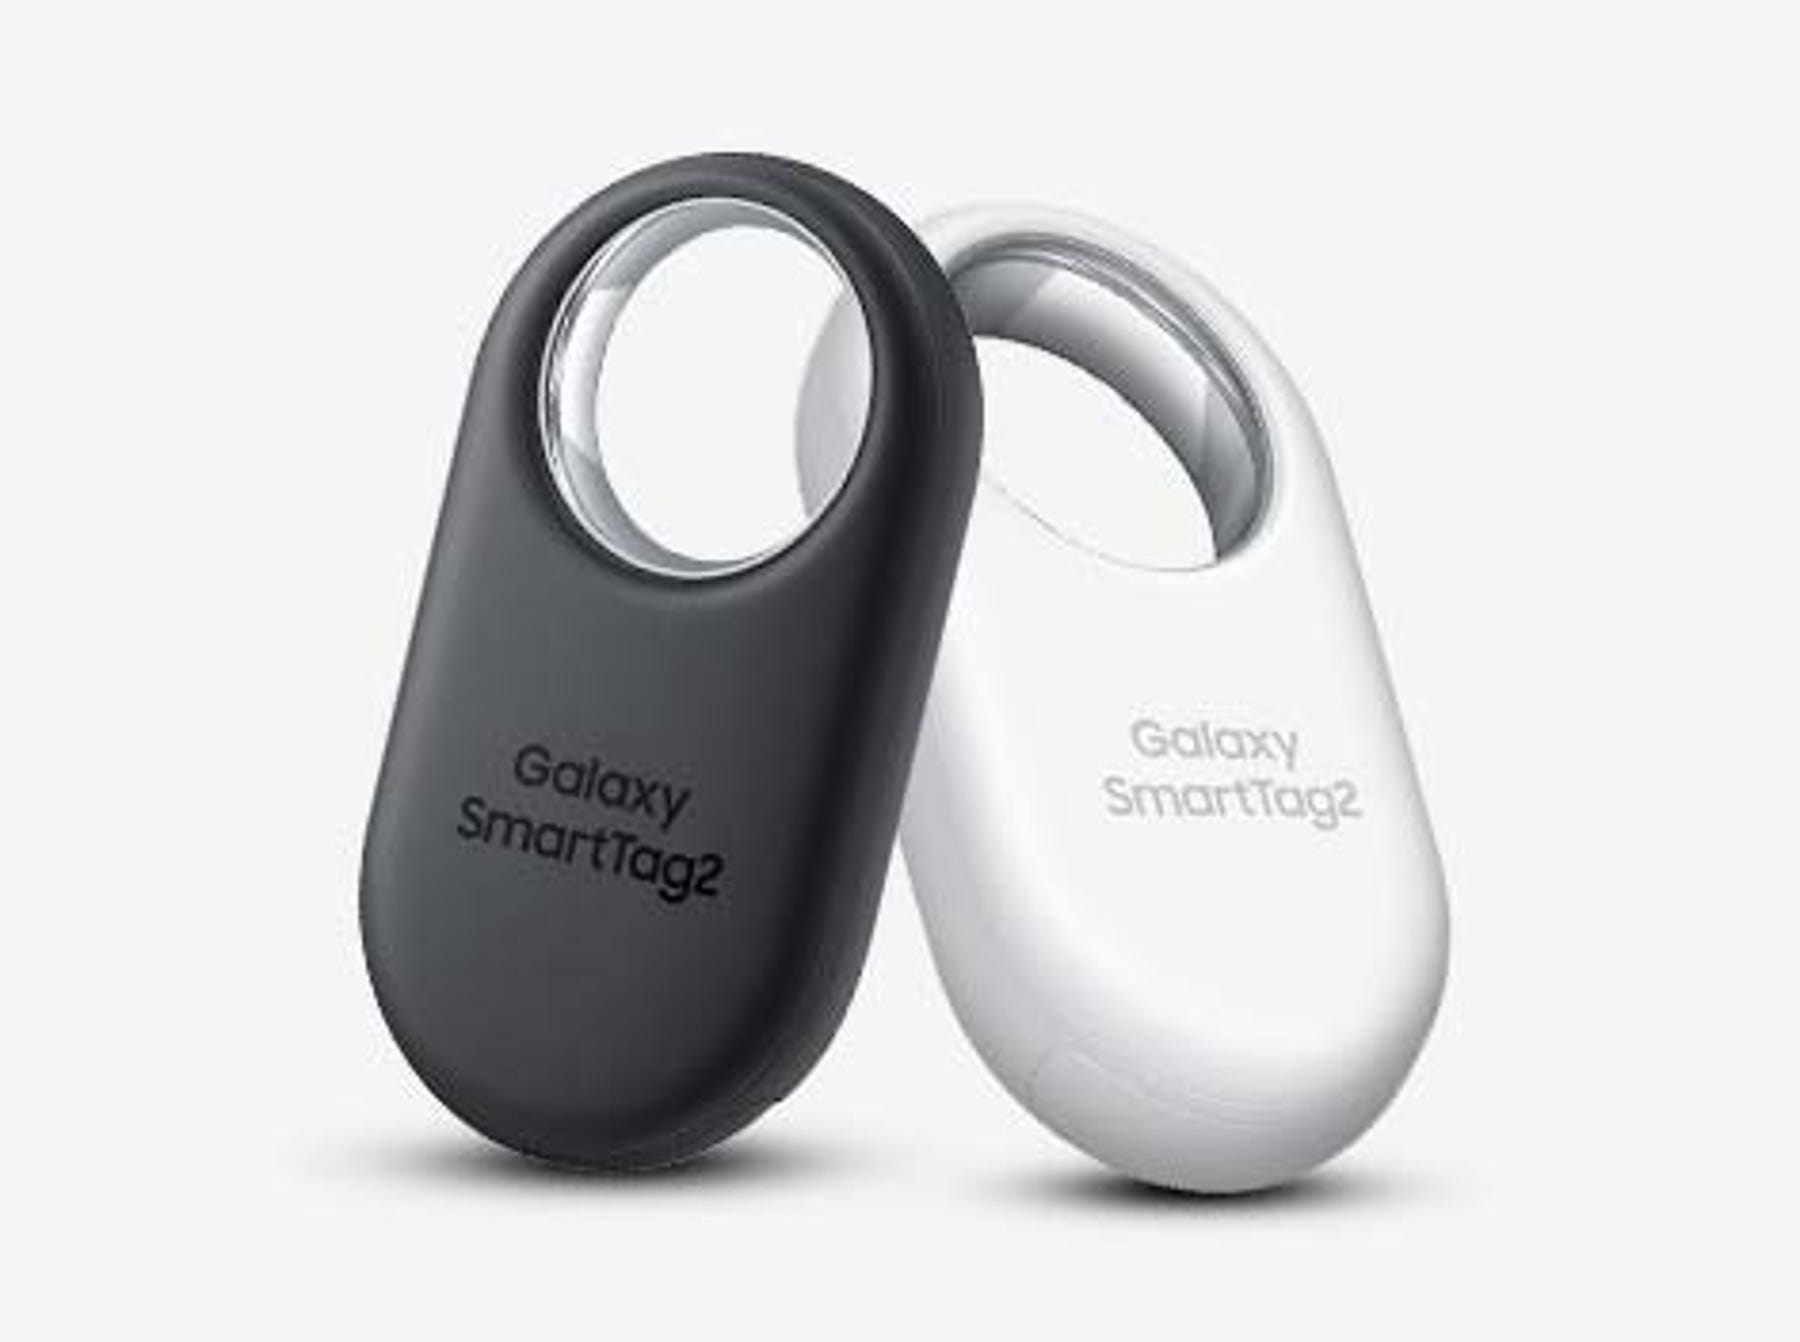 Dispositif de repérage Bluetooth Galaxy SmartTag2 de Samsung